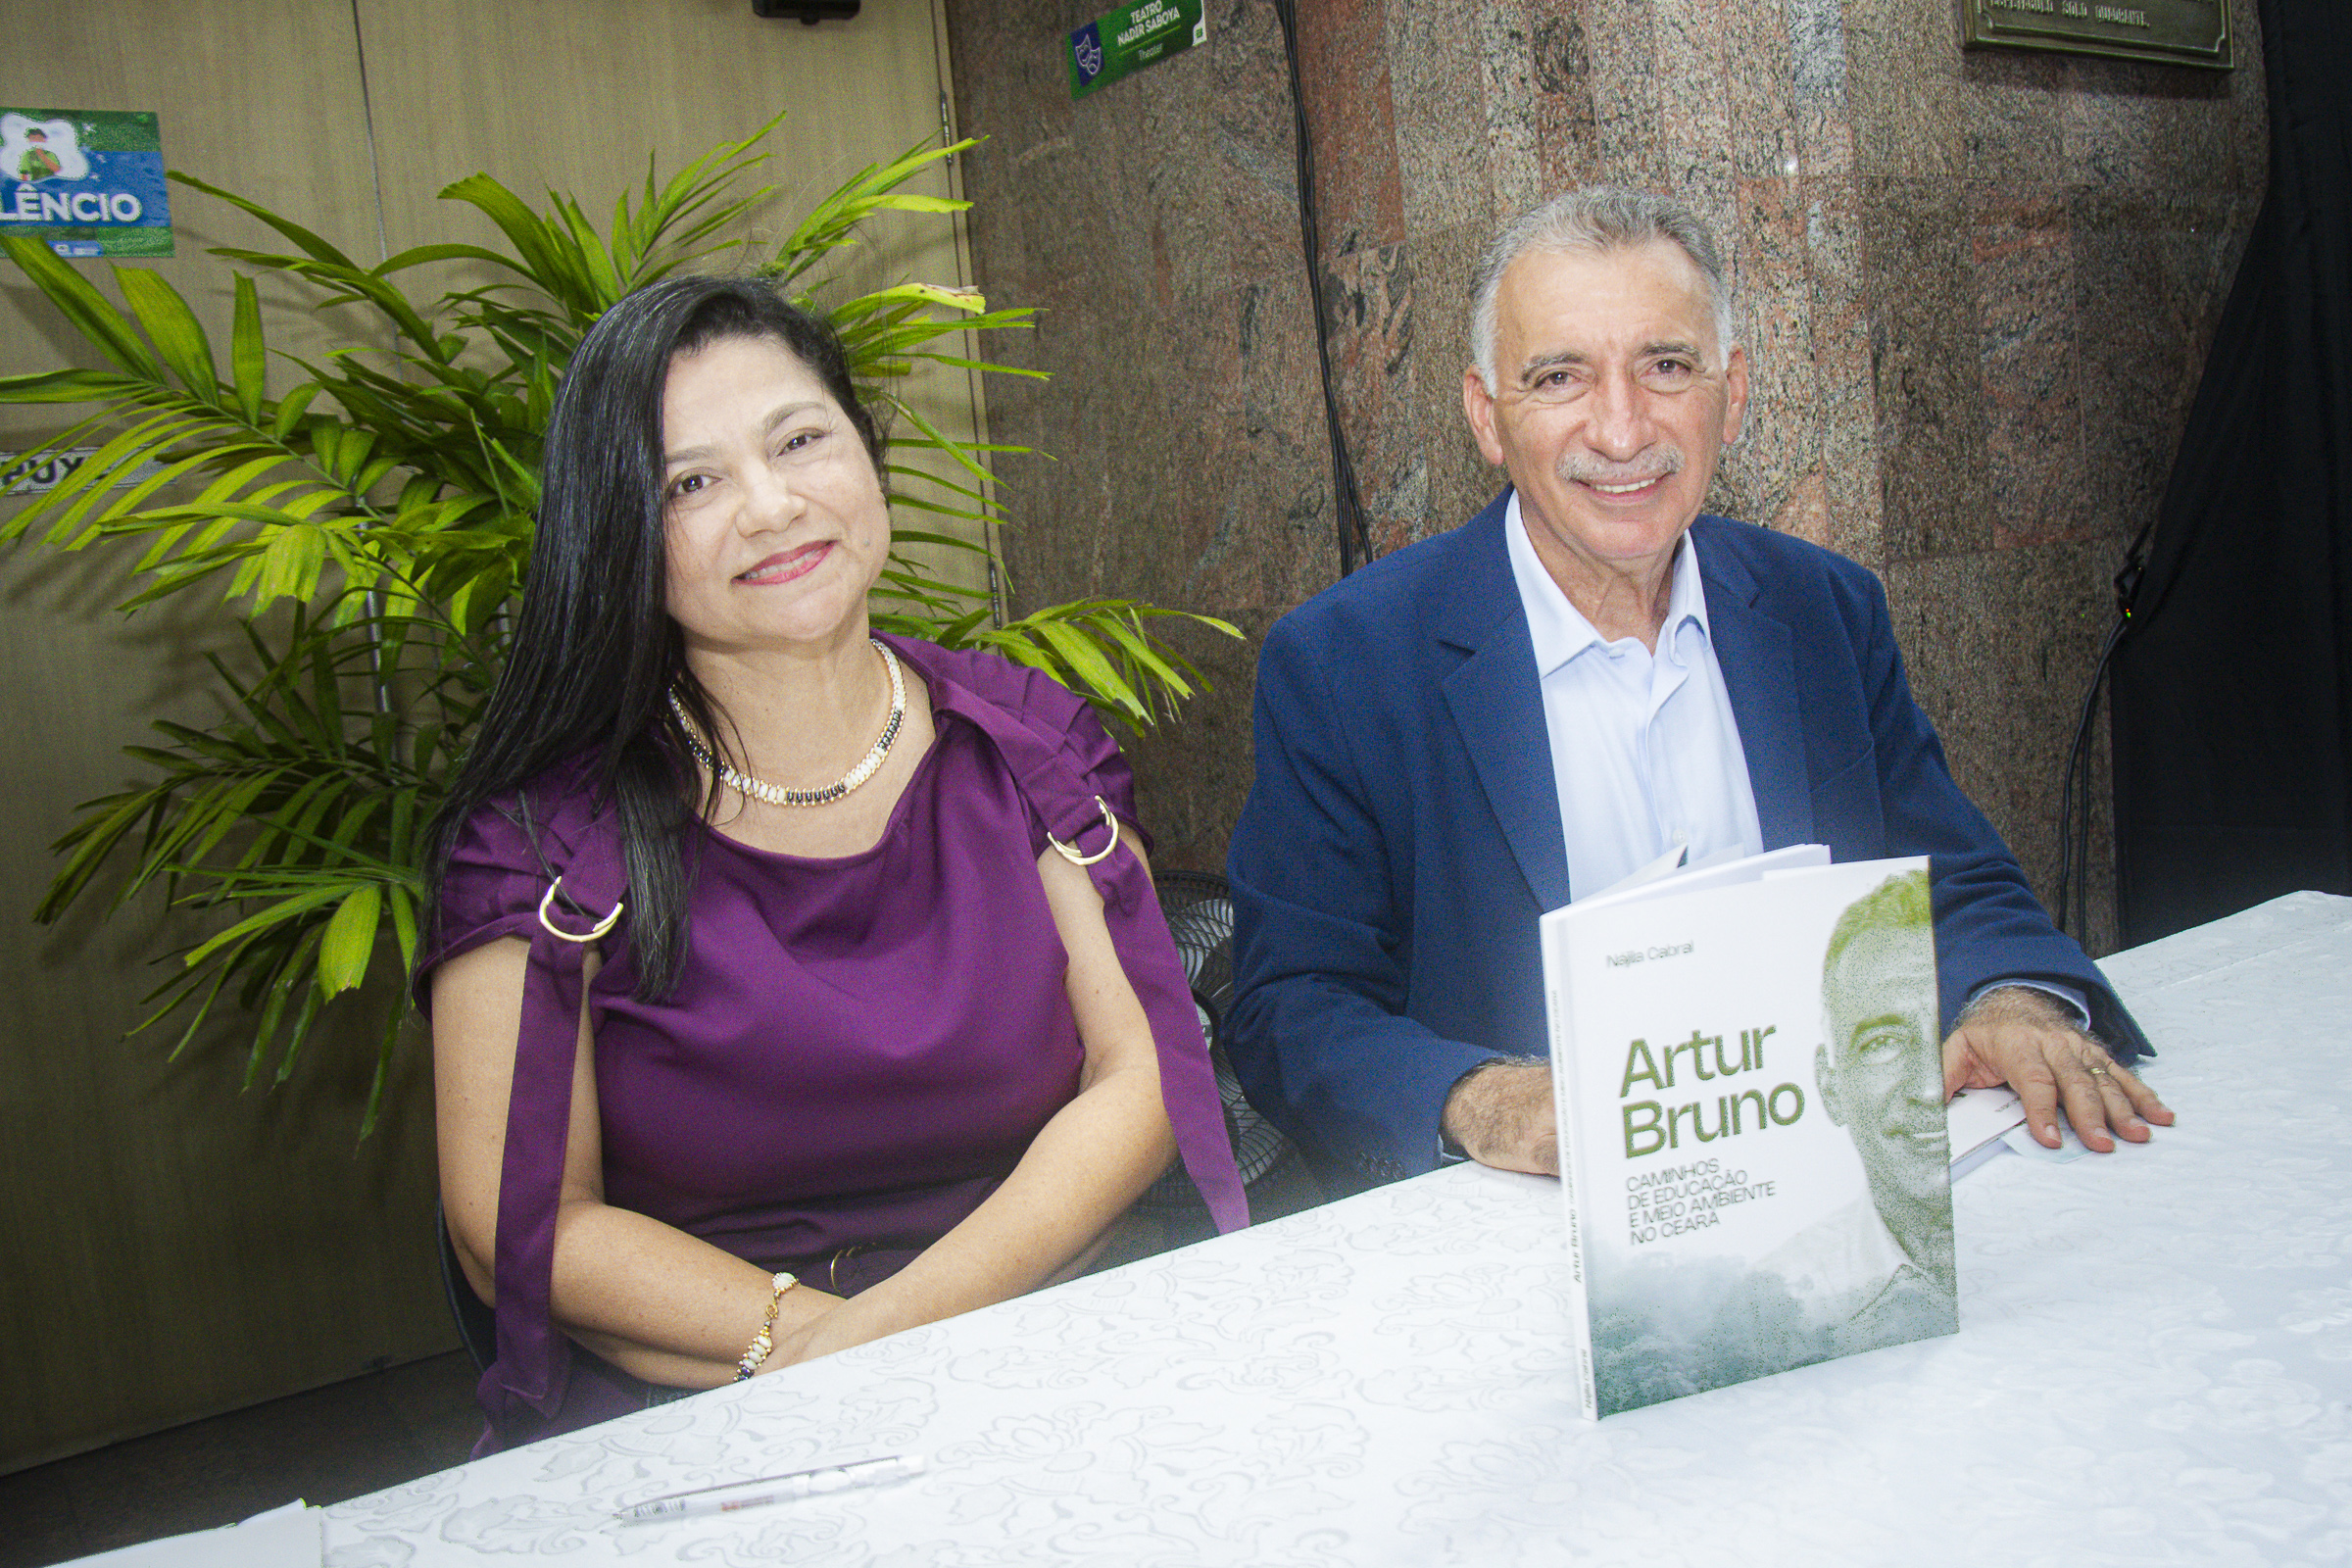 Biografia de Artur Bruno destaca sua trajetória na educação e meio ambiente